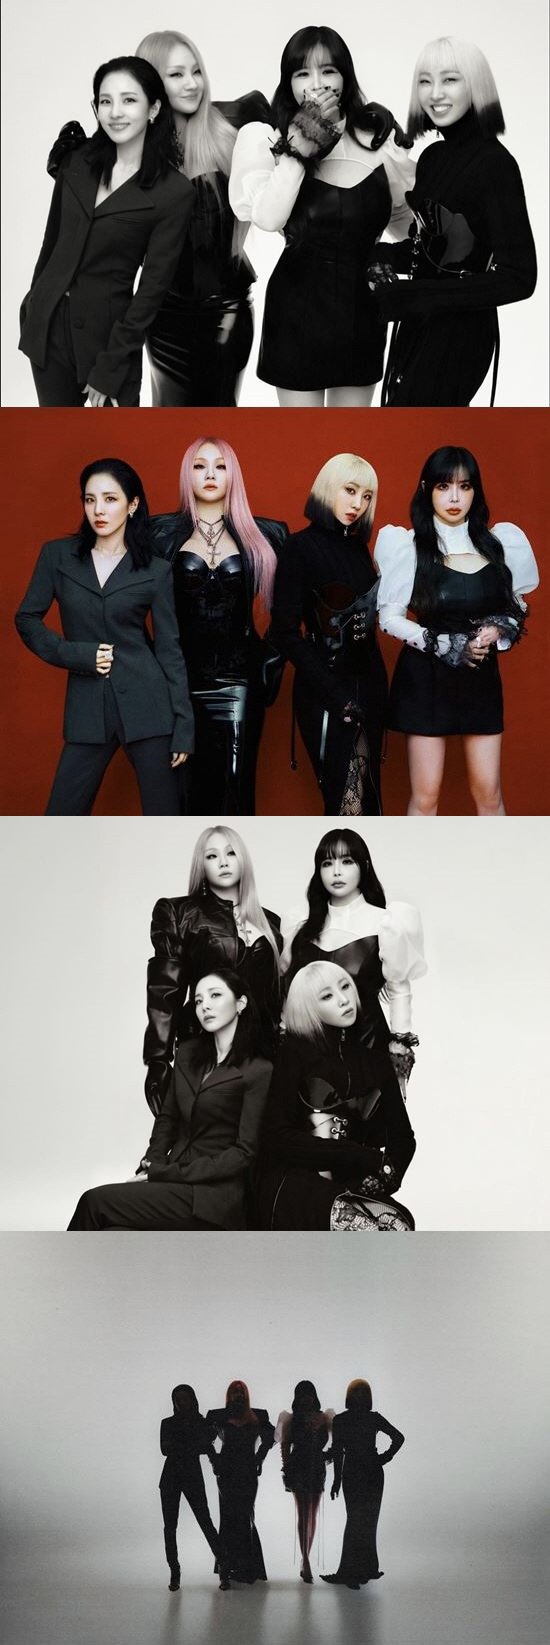 투애니원(2NE1) 드디어 뭉쳤다! 데뷔 15주년 기념 완전체 사진 공개 "블랙잭 사랑해"